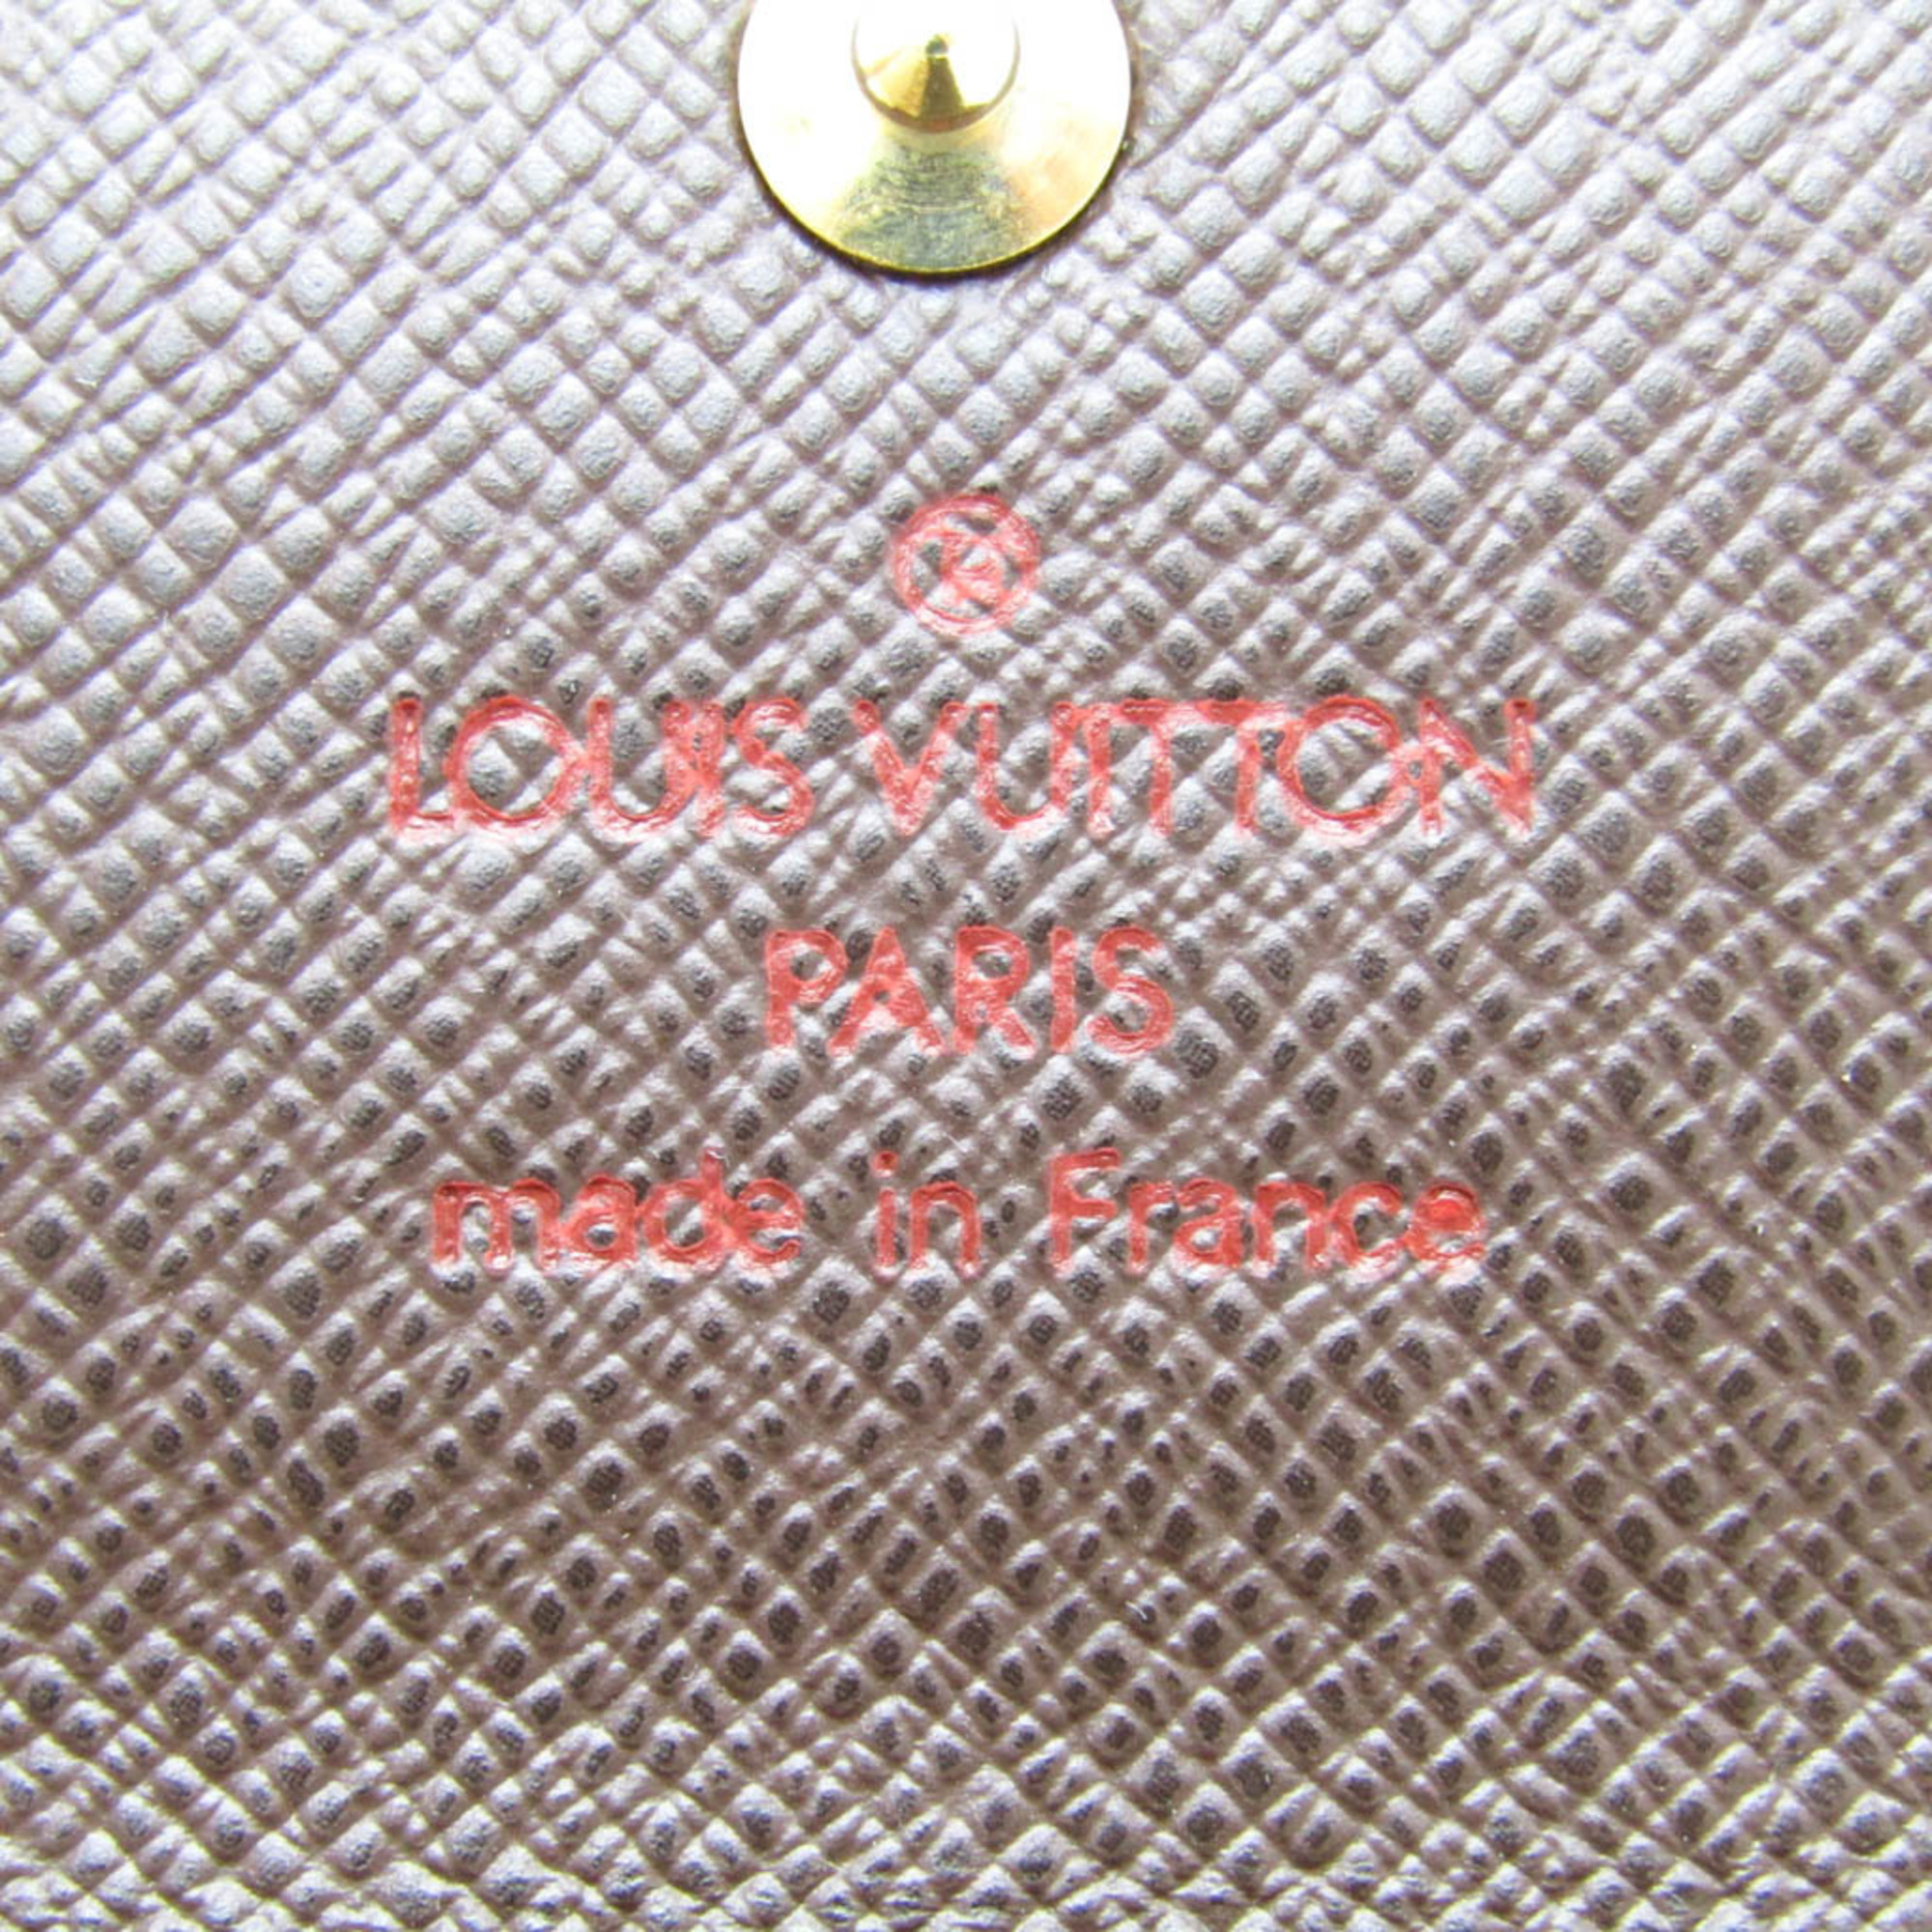 ルイ・ヴィトン(Louis Vuitton) ダミエ ミュルティクレ4 N62631 レディース,メンズ ダミエキャンバス キーケース エベヌ